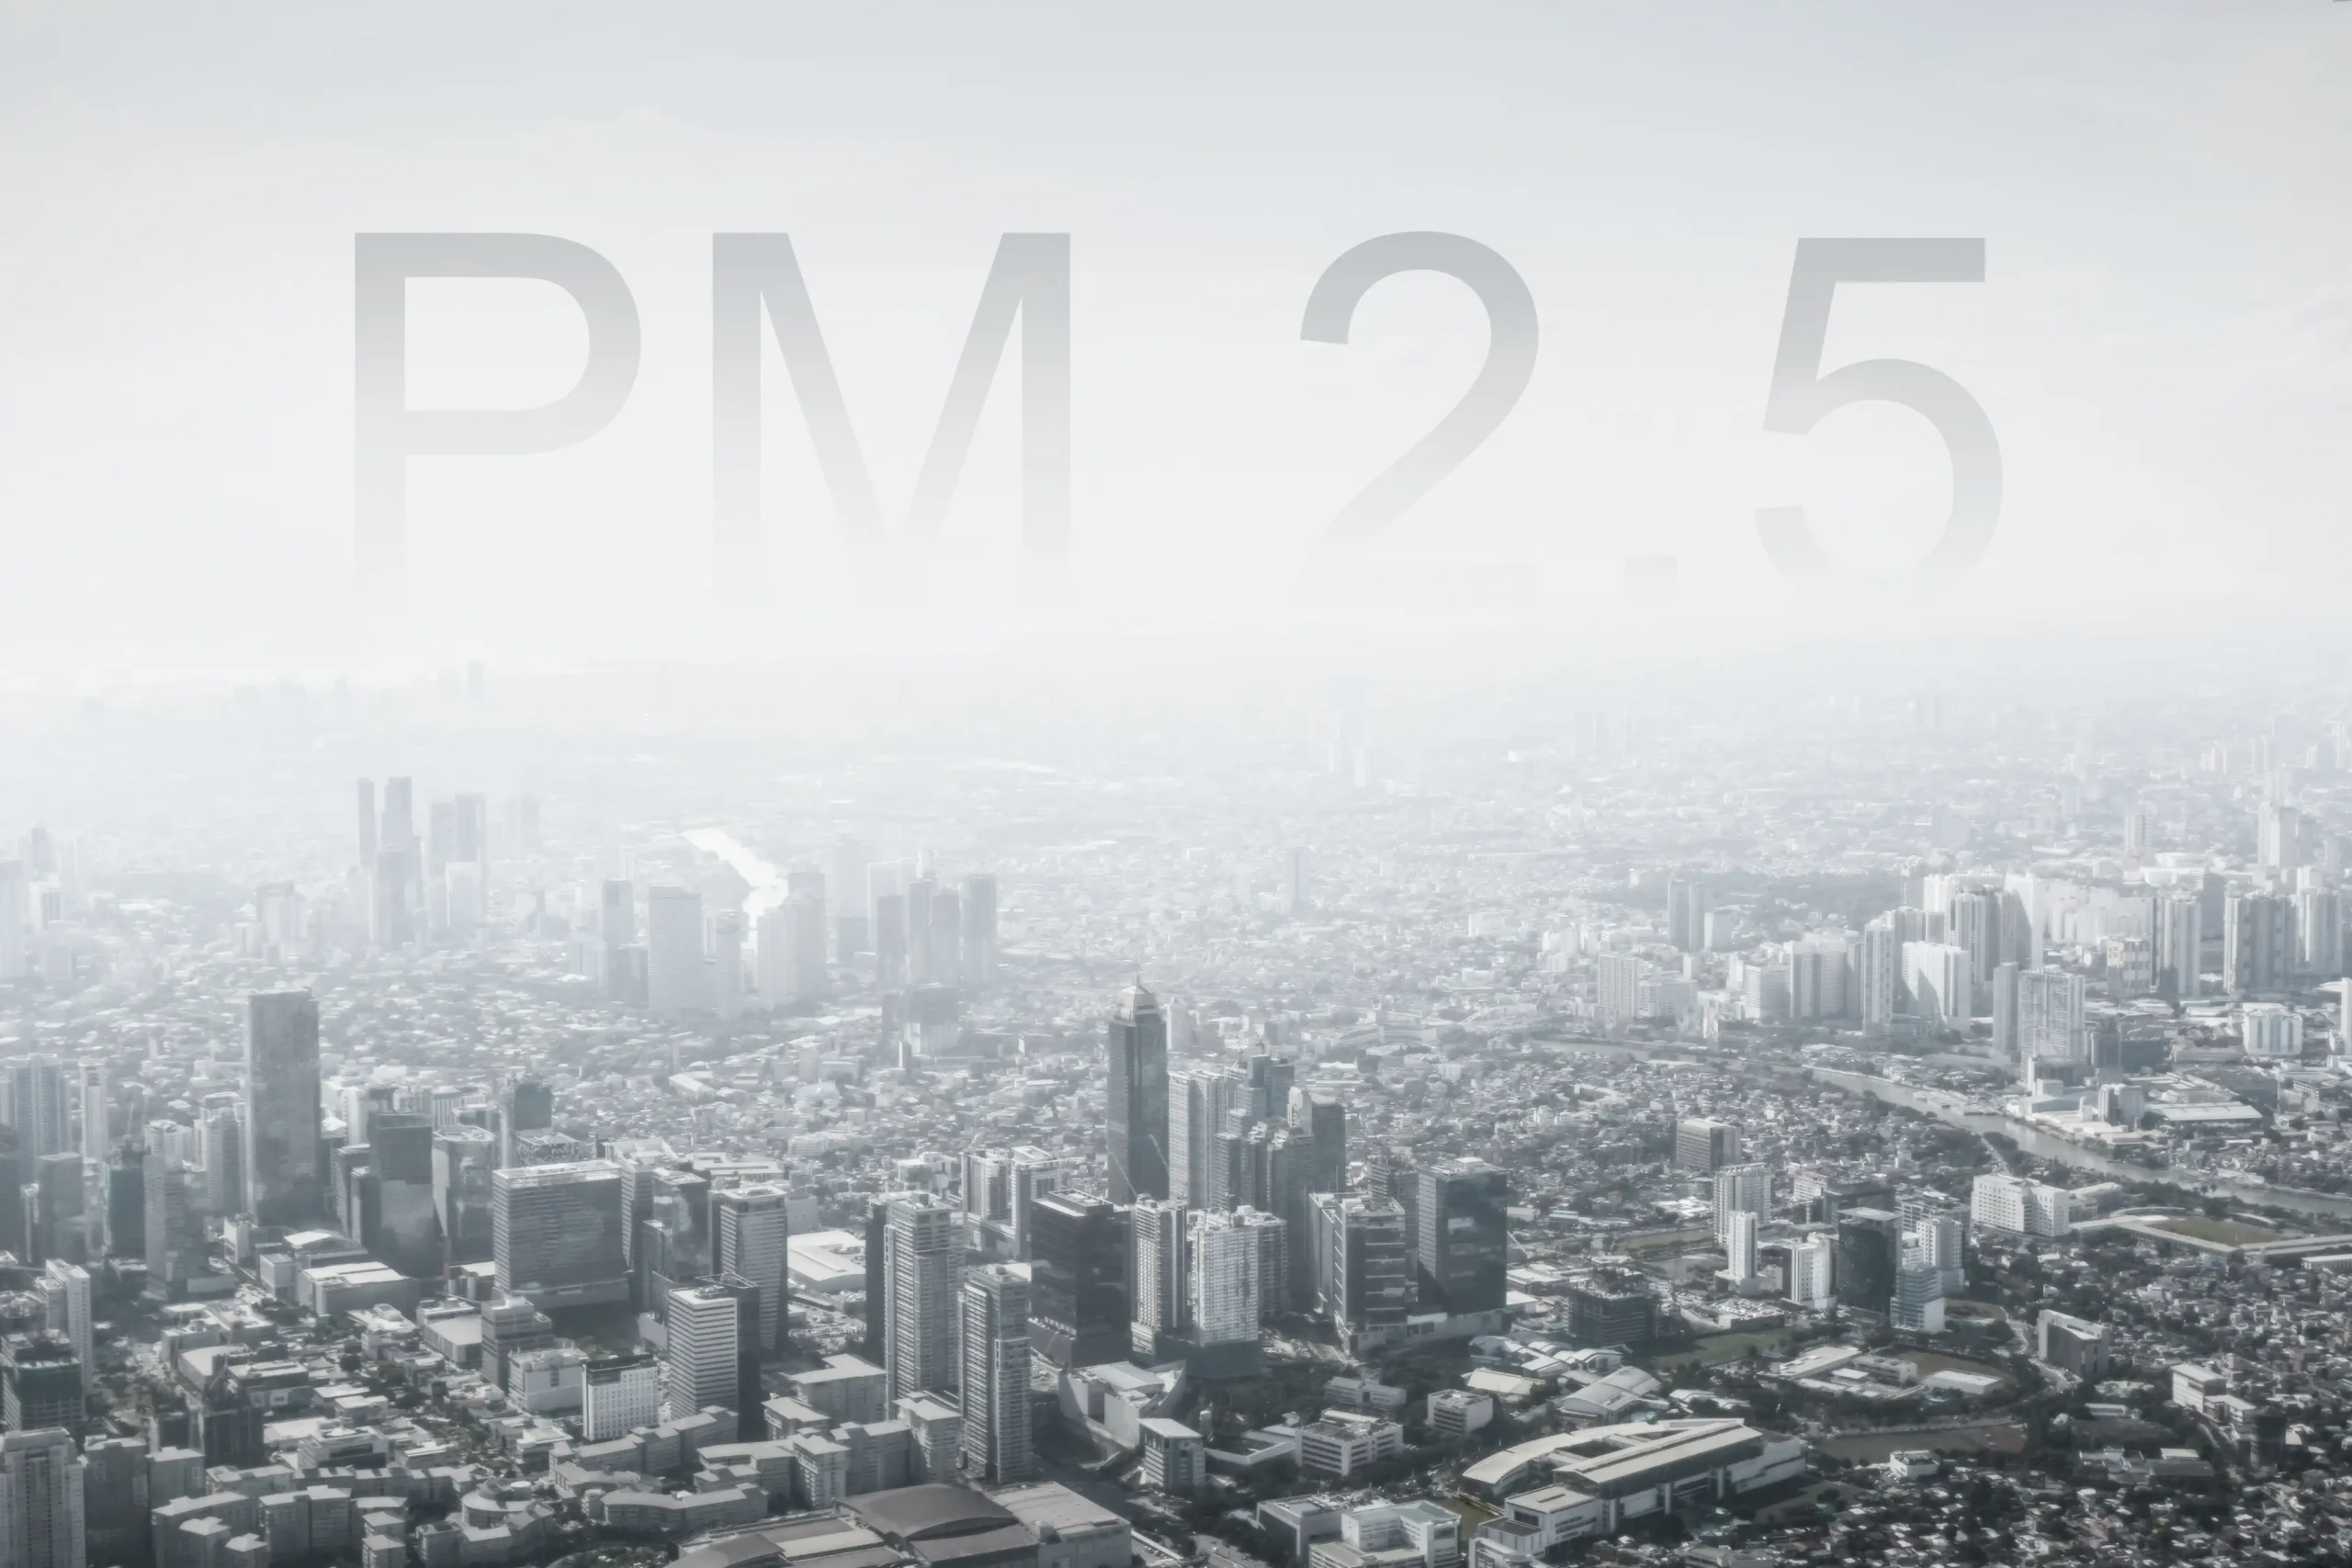  در آلودگی هوا منظور از PM2.5 چیست؟